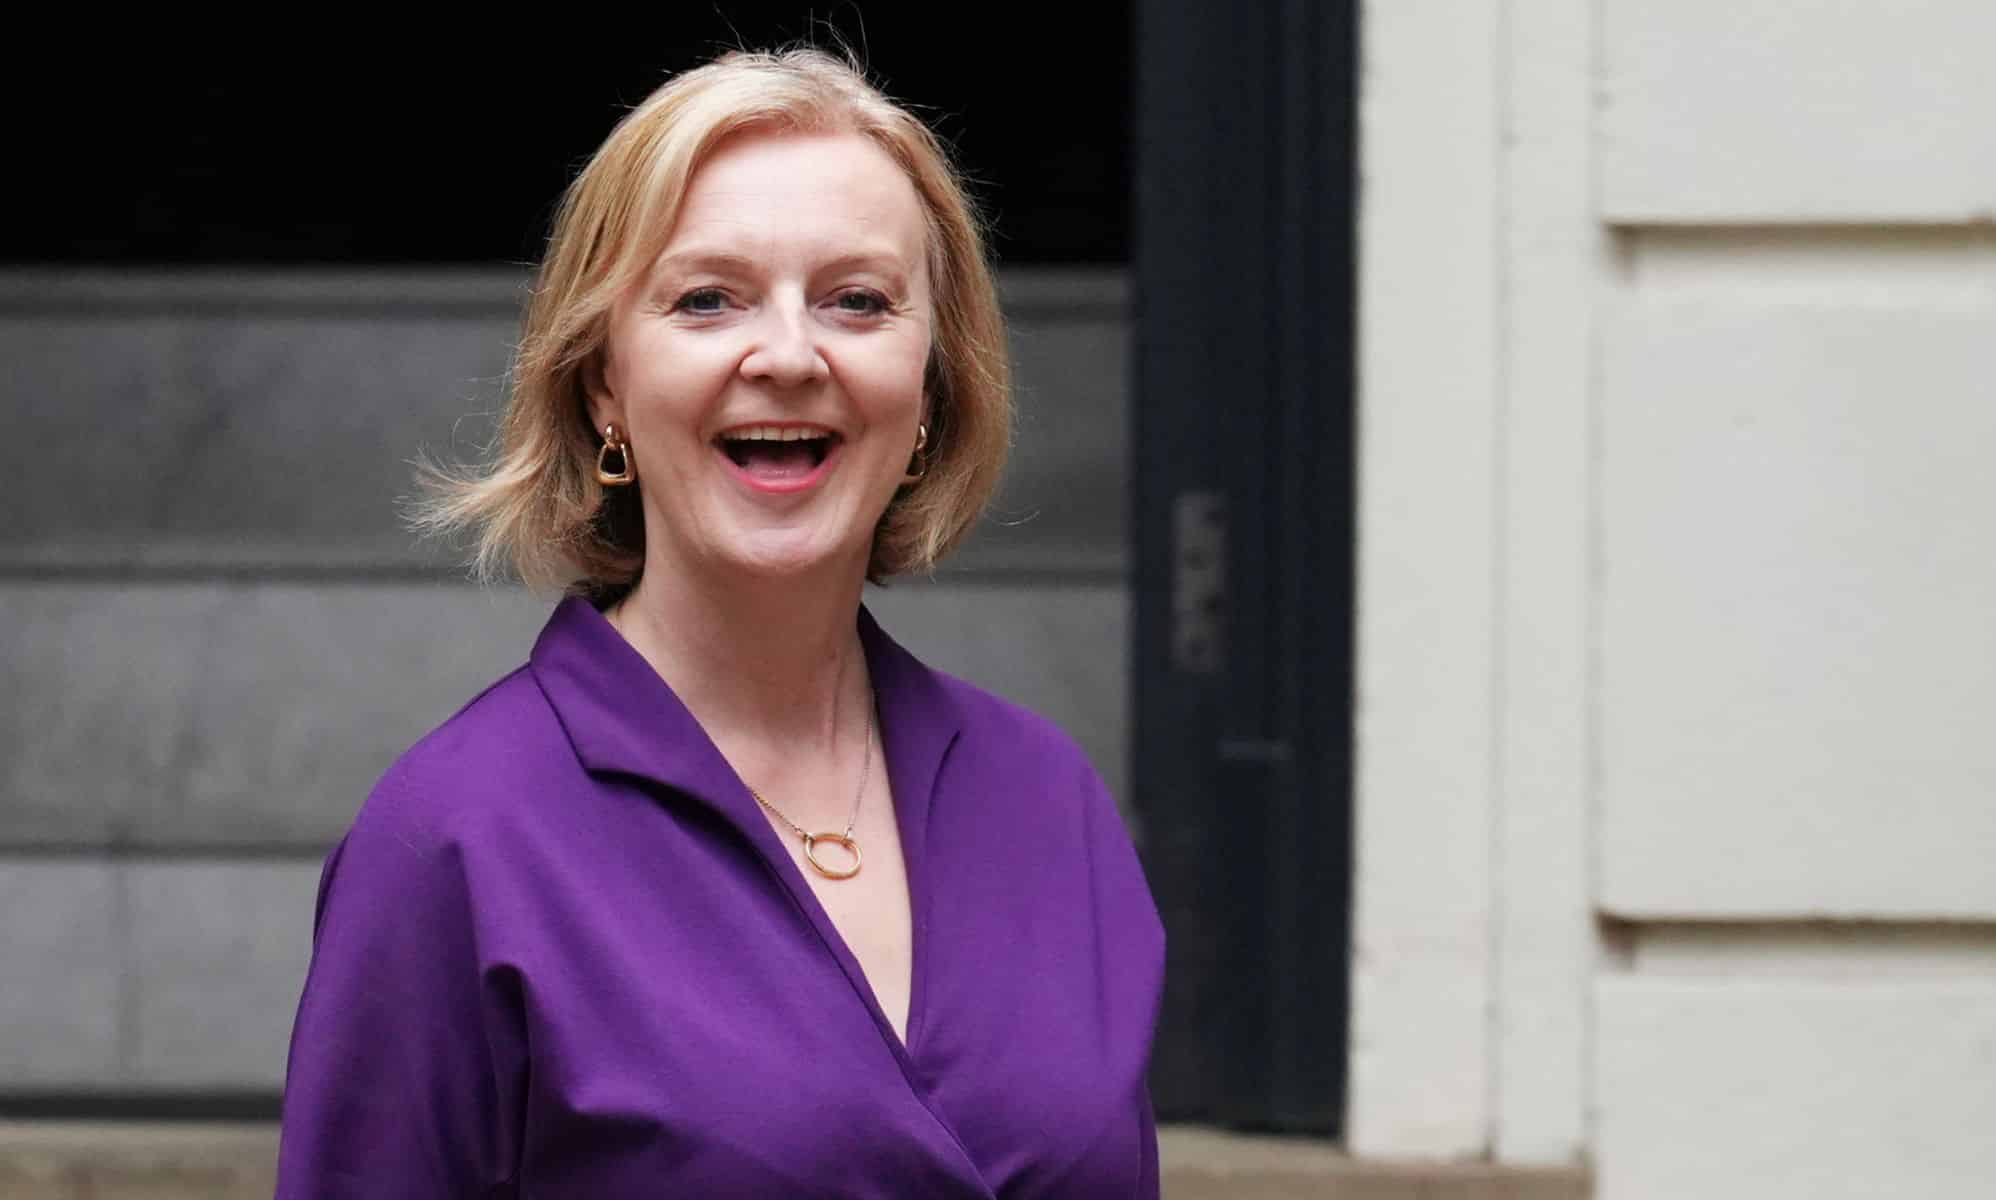 Liz Truss sourit alors qu'elle se tient devant un immeuble portant une tenue violette